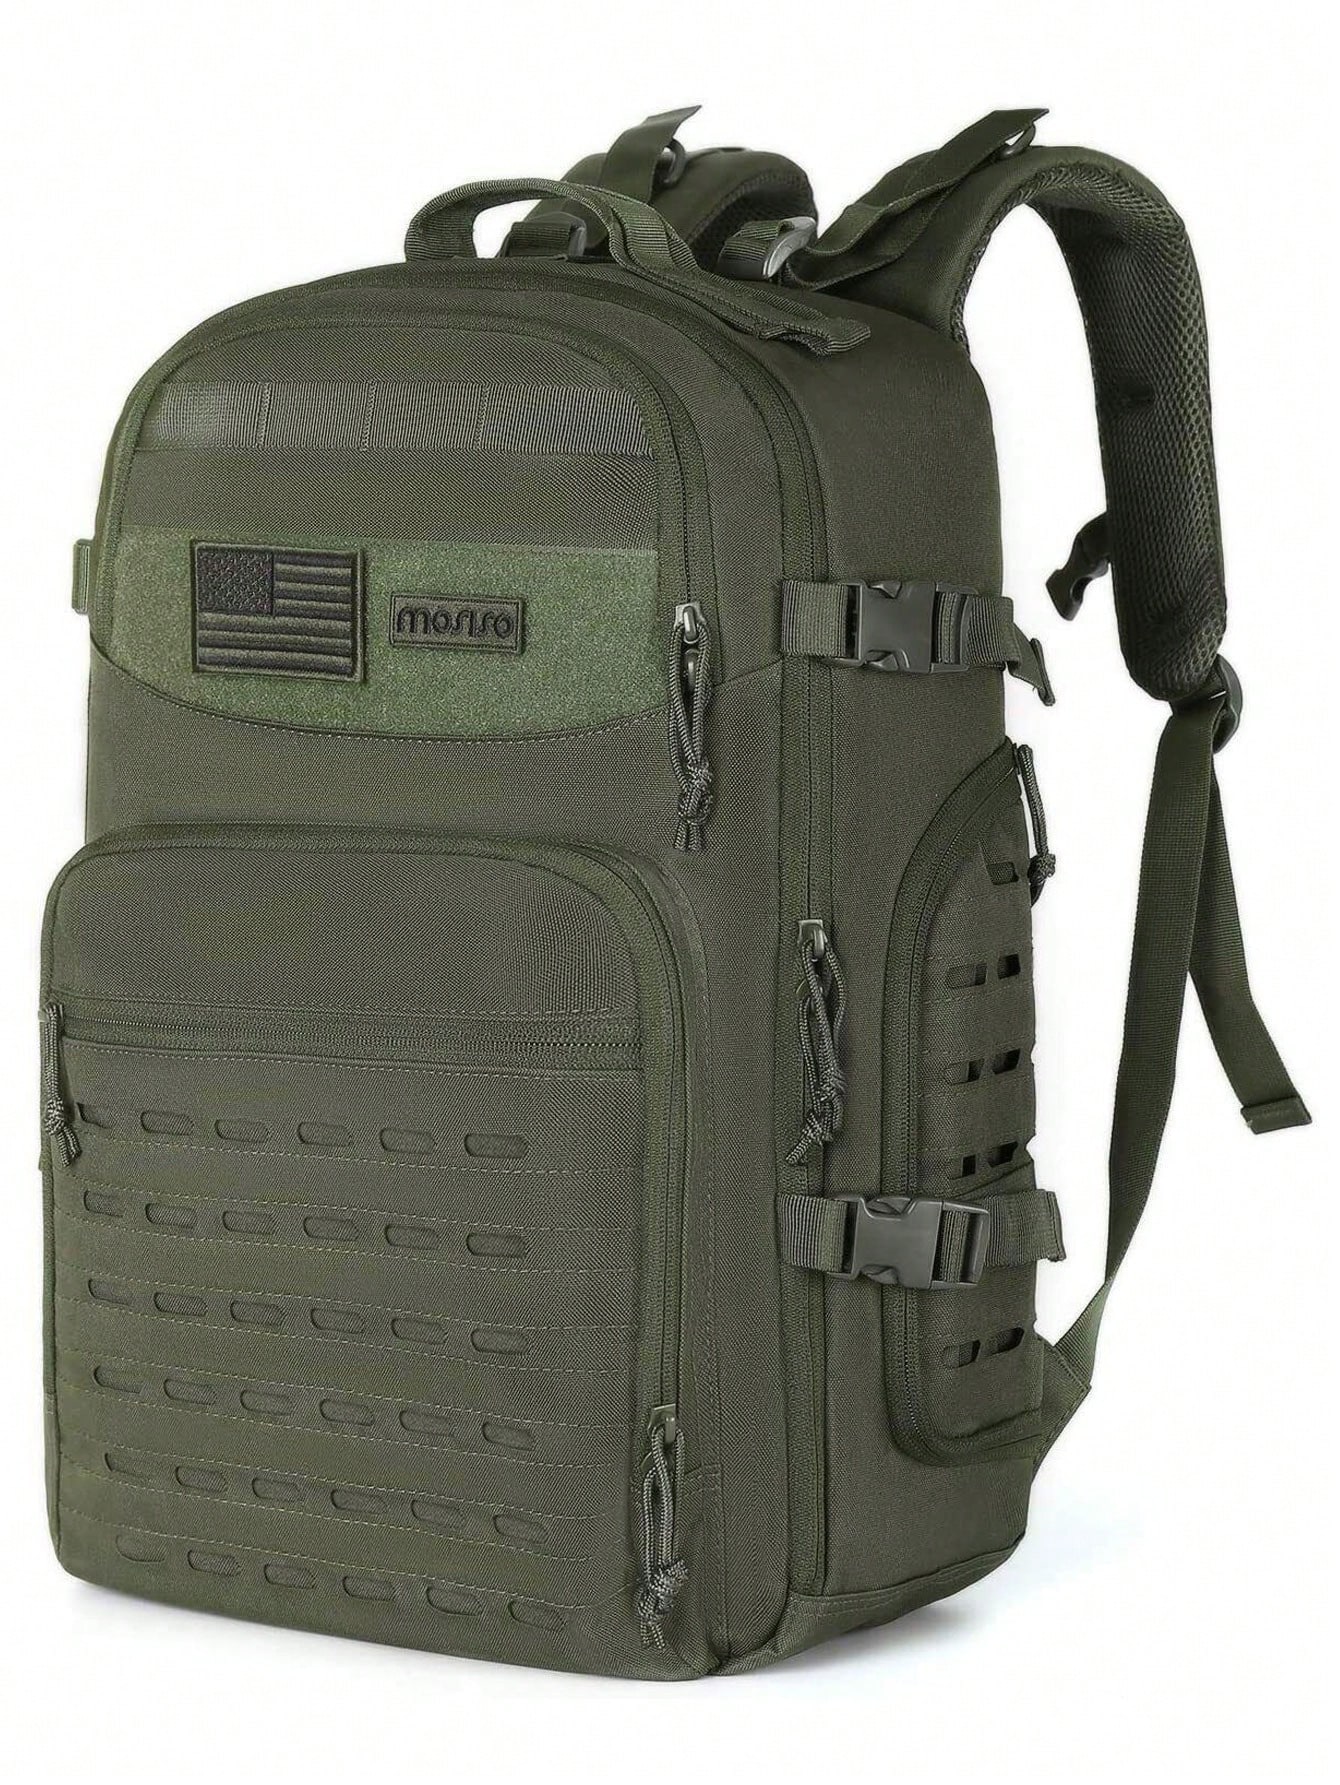 Мужской тактический рюкзак Mosiso, армейский зеленый